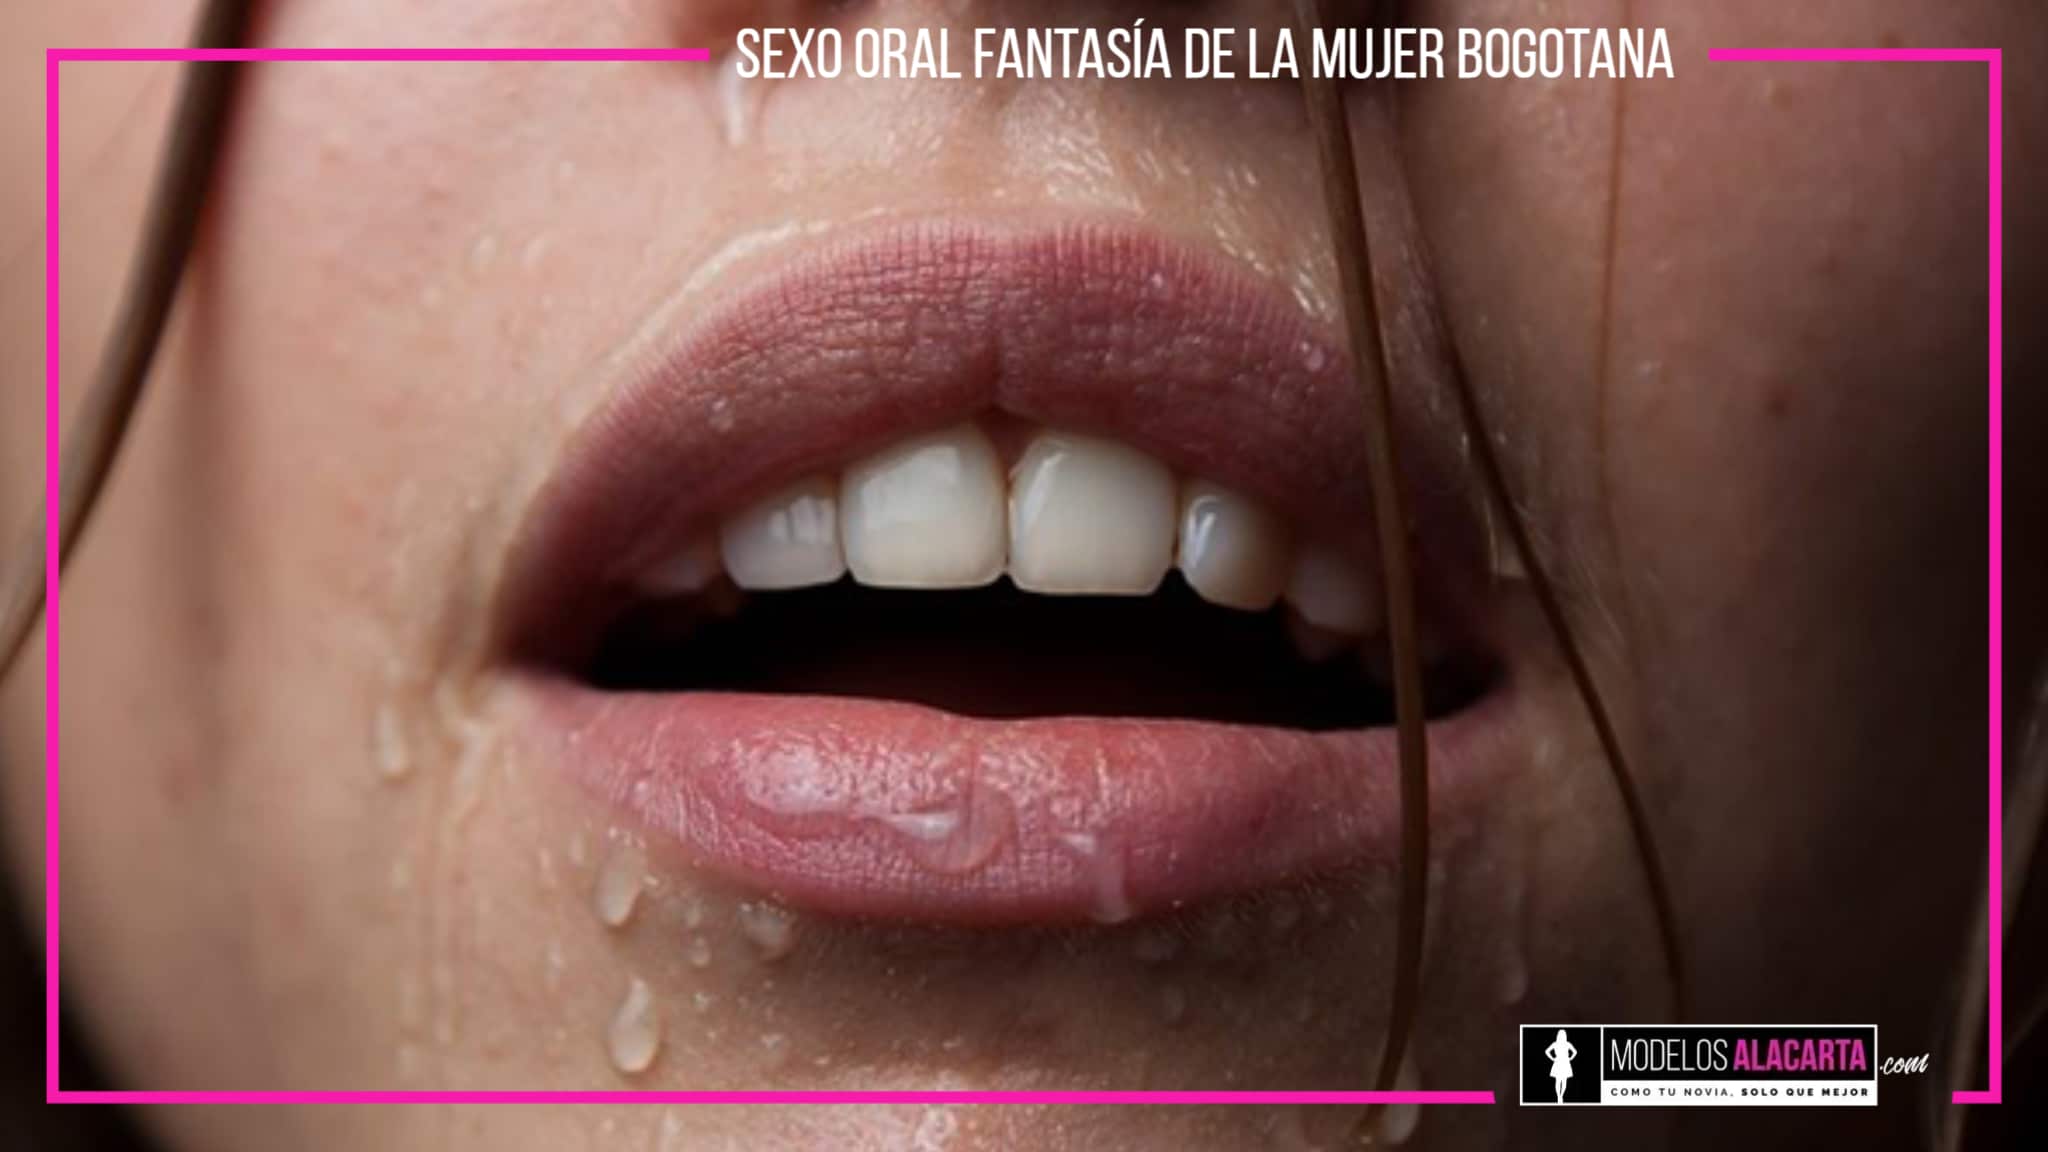 Sexo oral fantasía de la mujer Bogotana Prepagos en bogotá